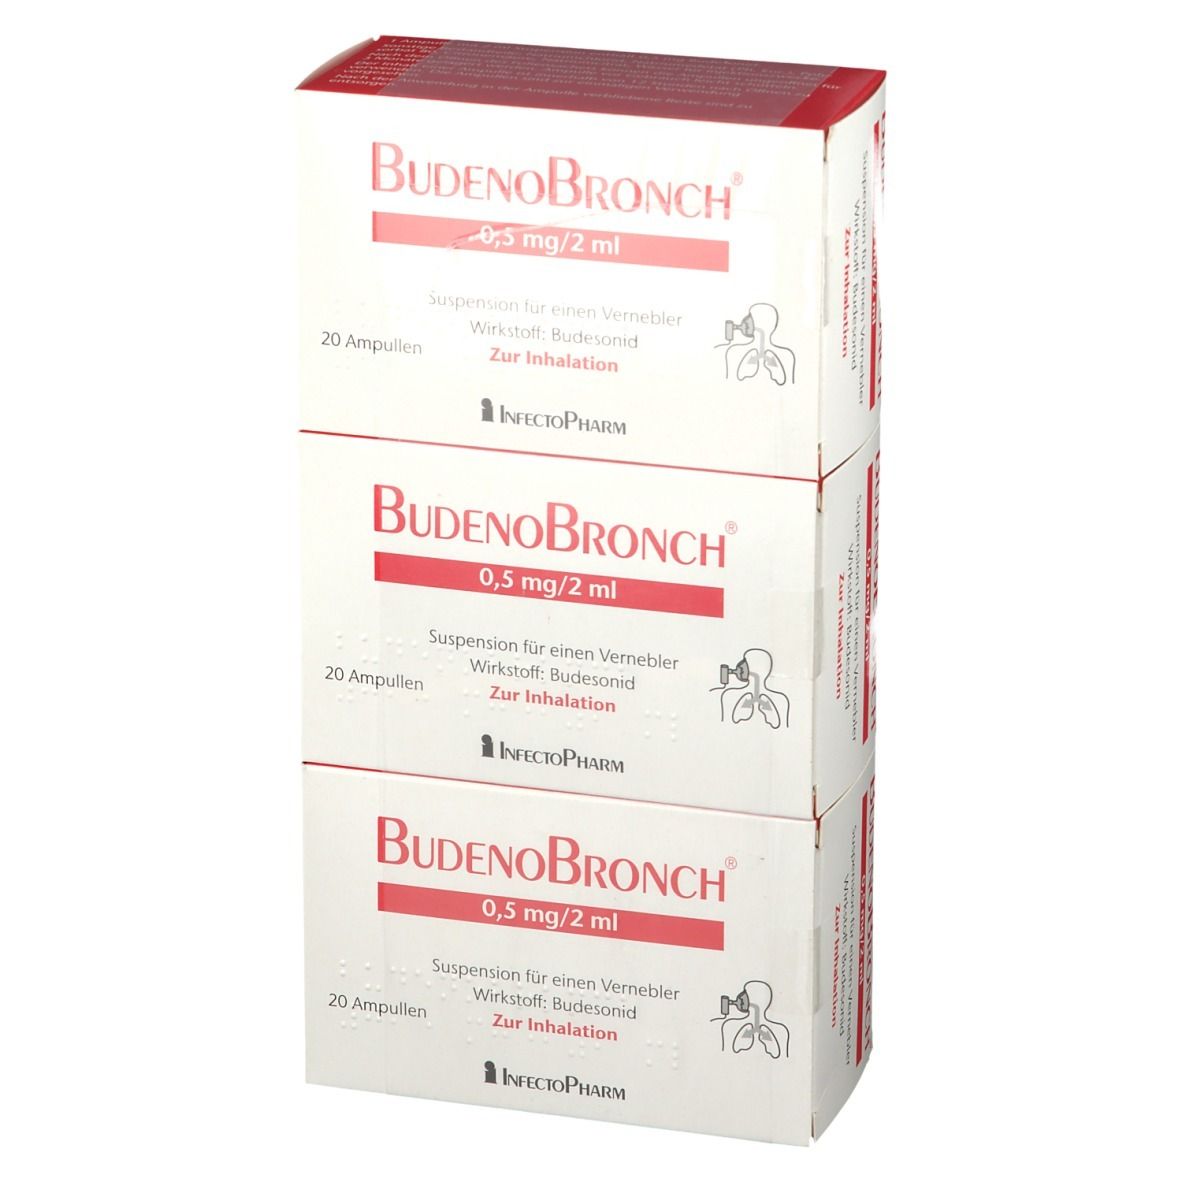 Budenobronch® 0,5 mg/2 ml